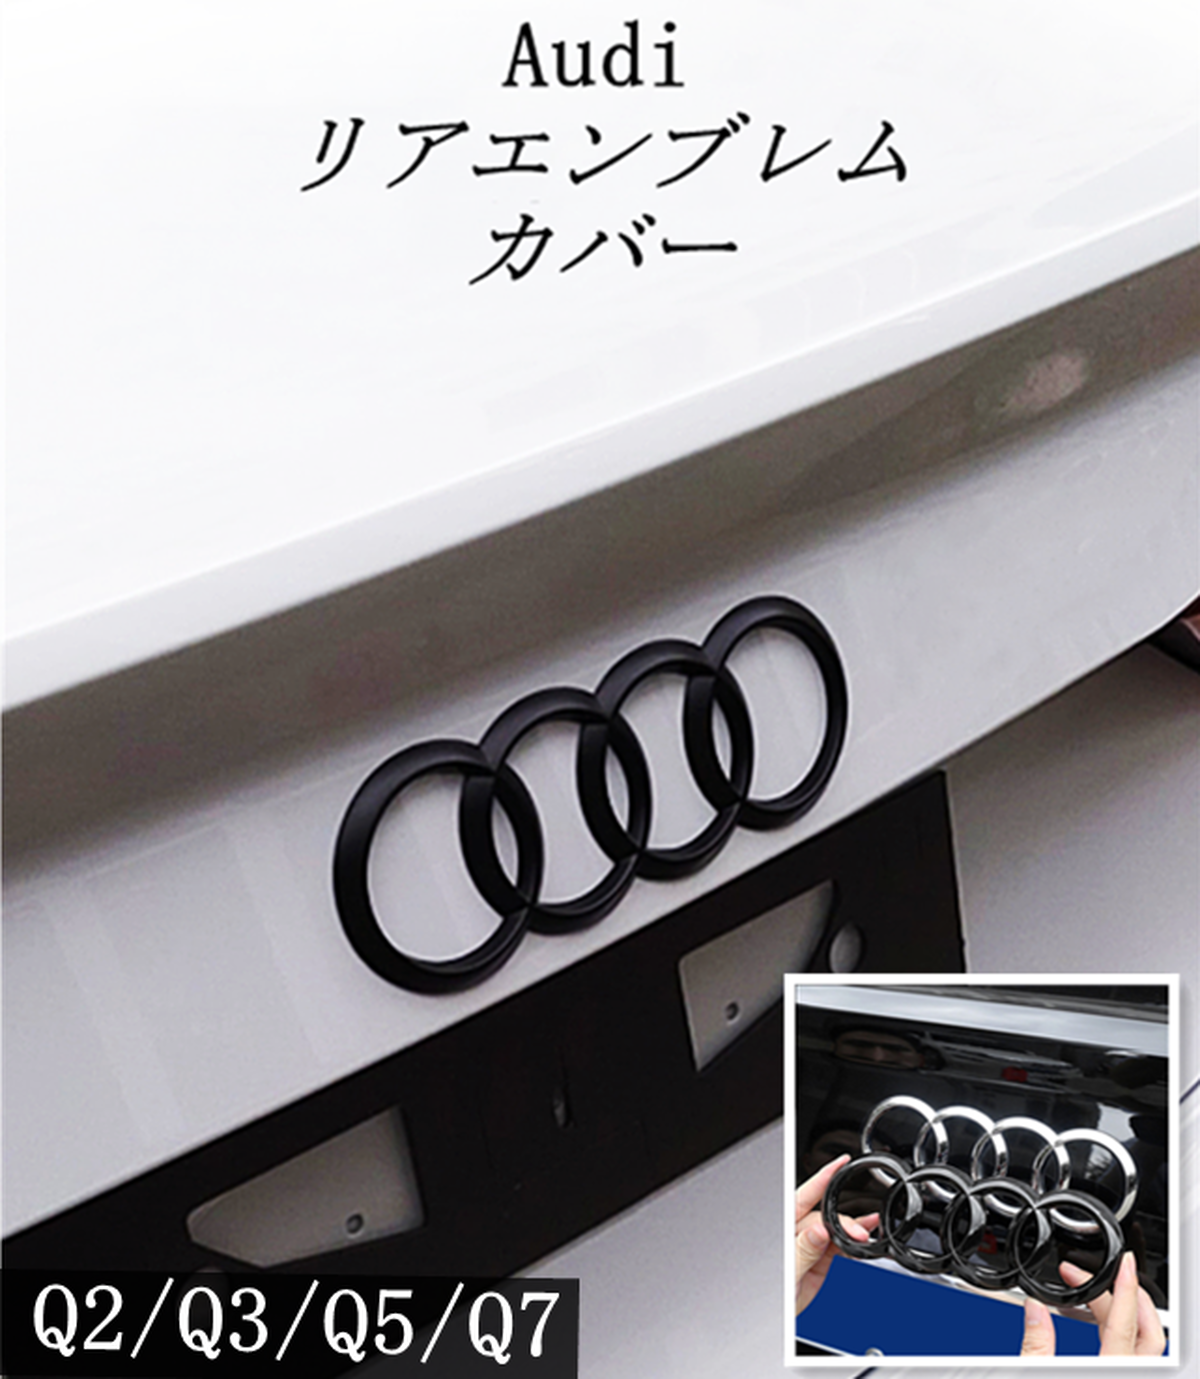 アウディ Audi エンブレム カバー 純正に貼付けタイプ Q2 Q3 Q5 Q7 リア トランク 用 スポーツ 仕様 ロゴ 社外品 Sq同様 欧車パーツ